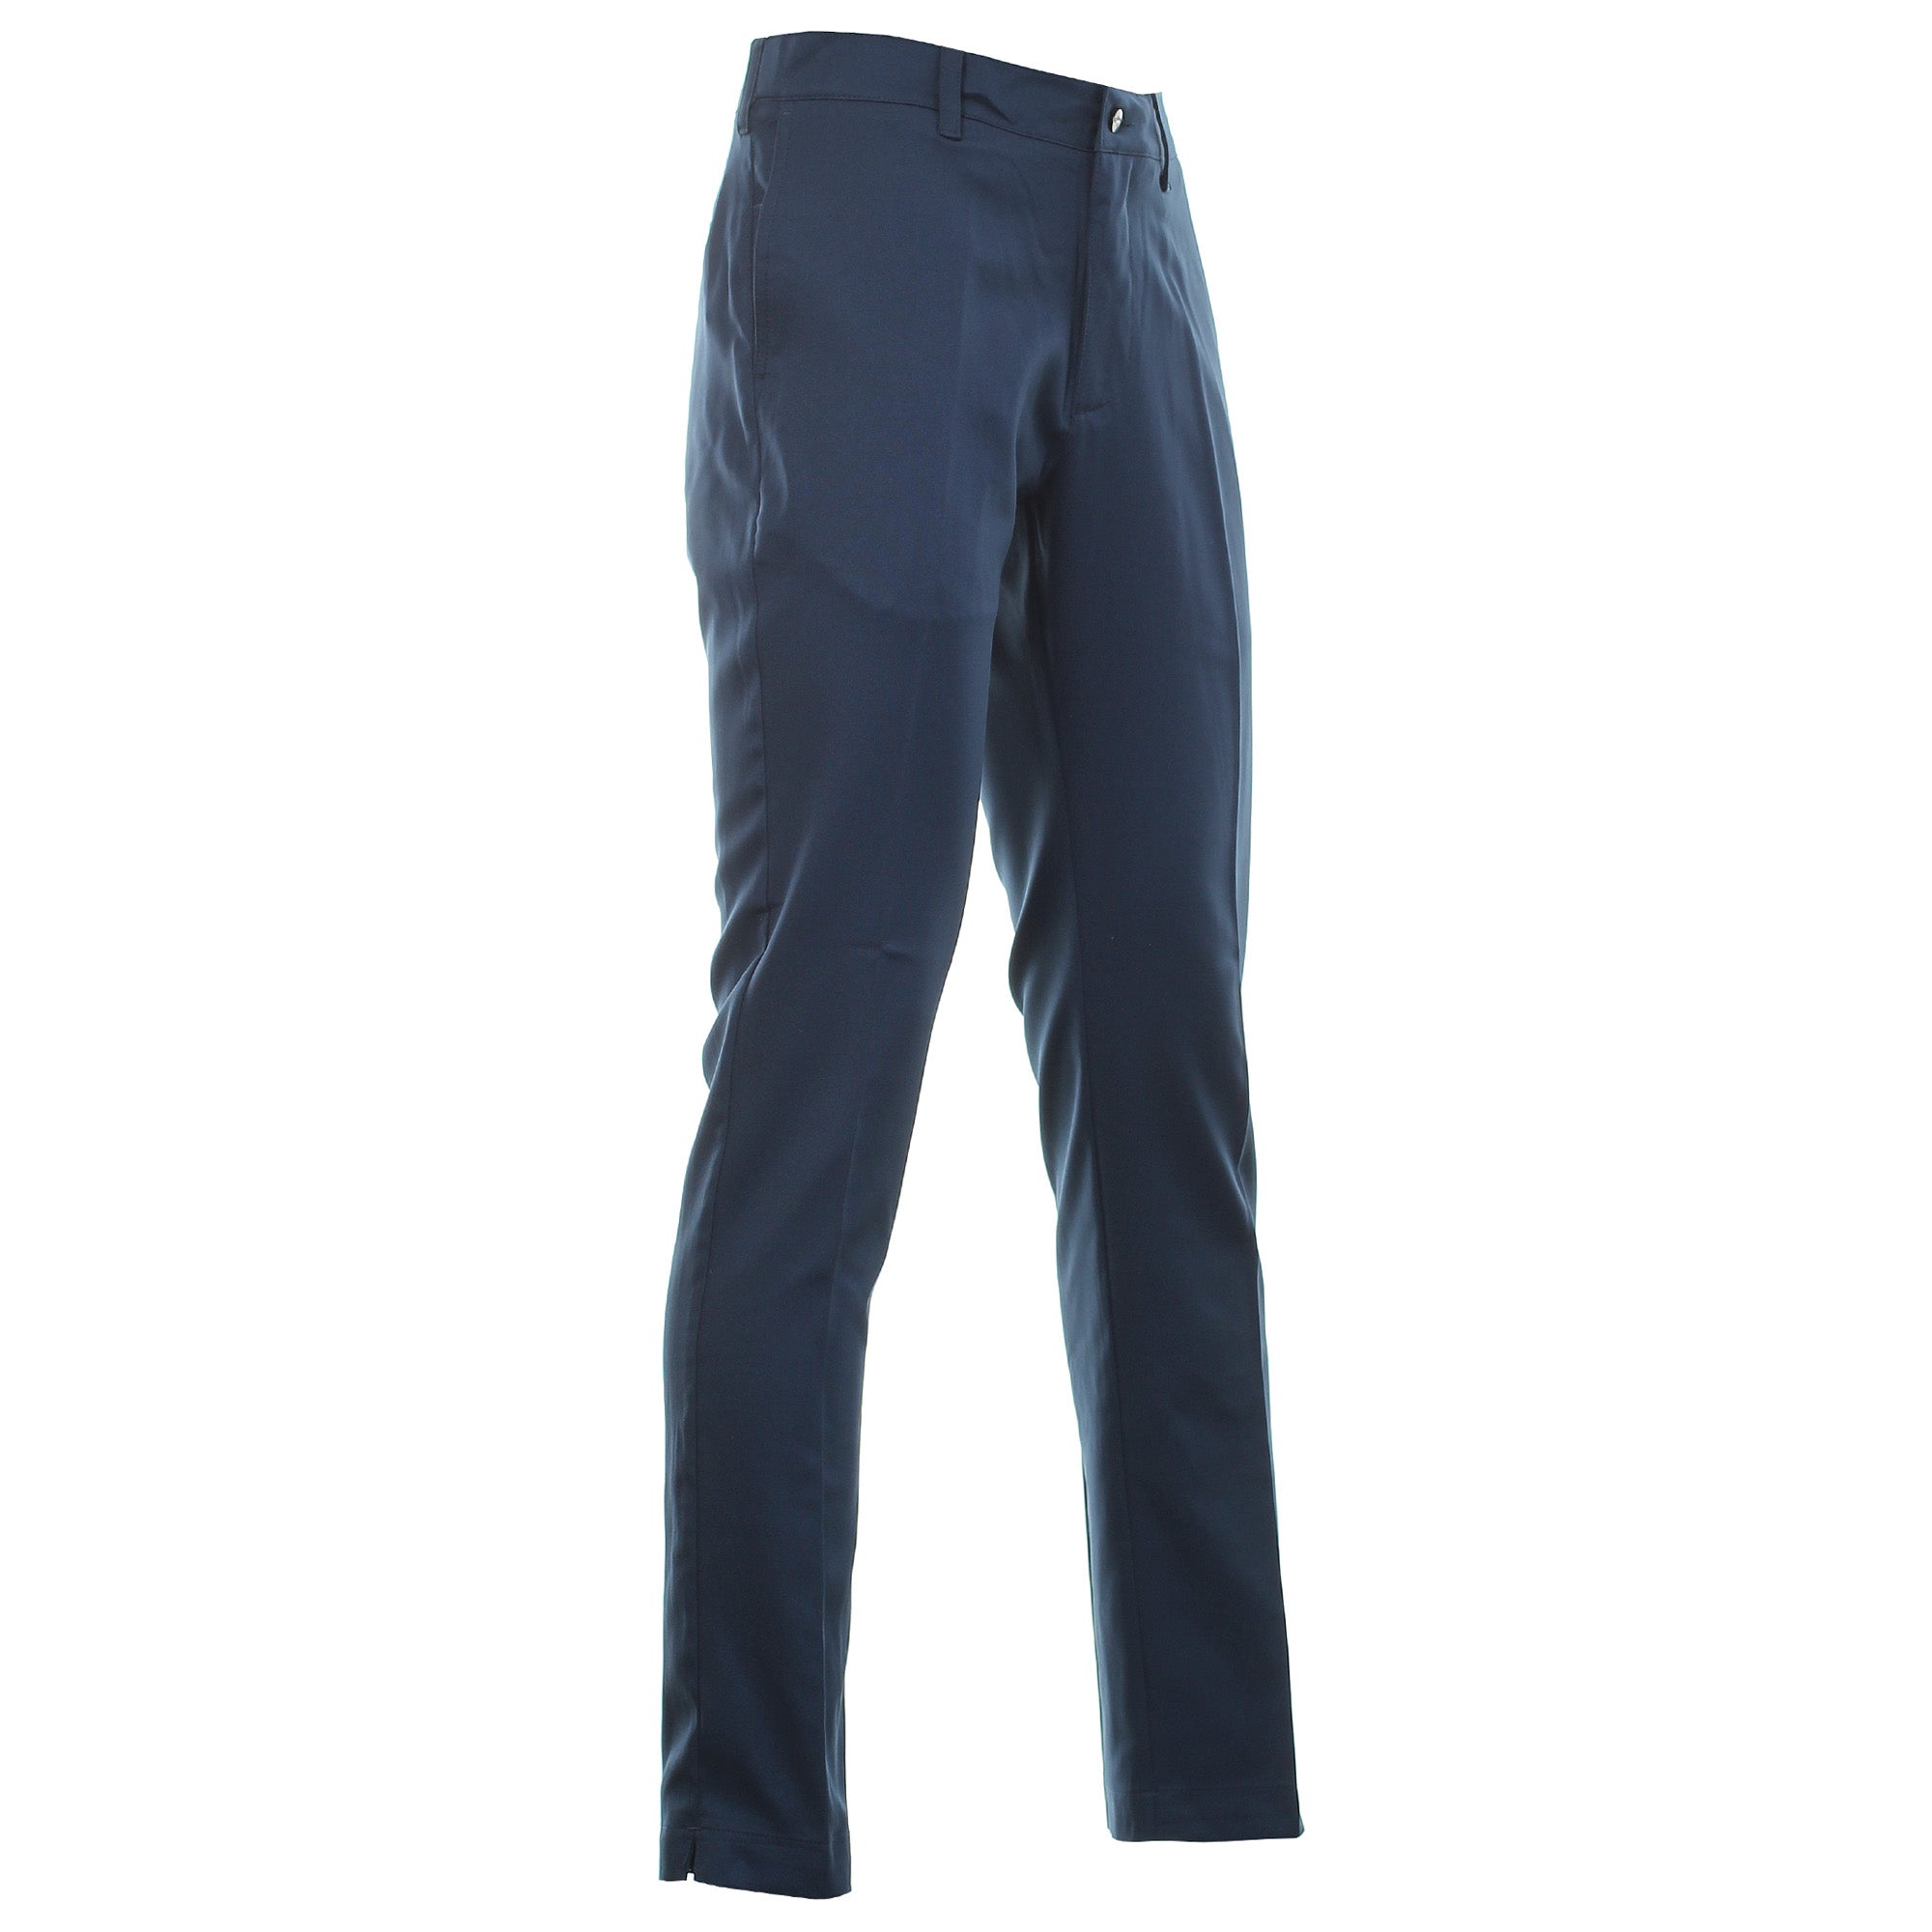 callaway-golf-x-series-tech-trouser-cgbr8045-dress-blue